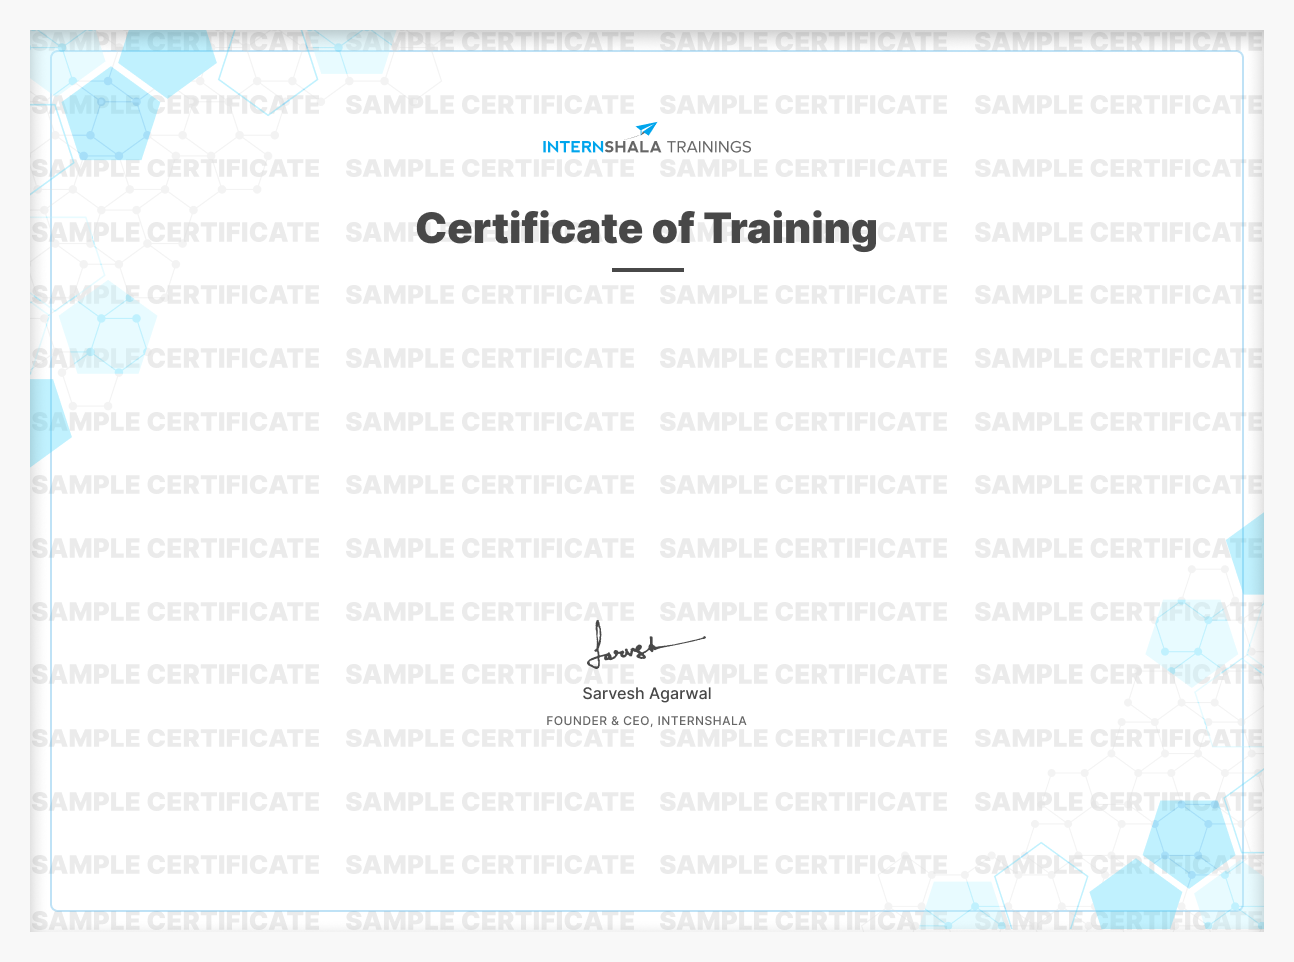 AR/VR Certification Training